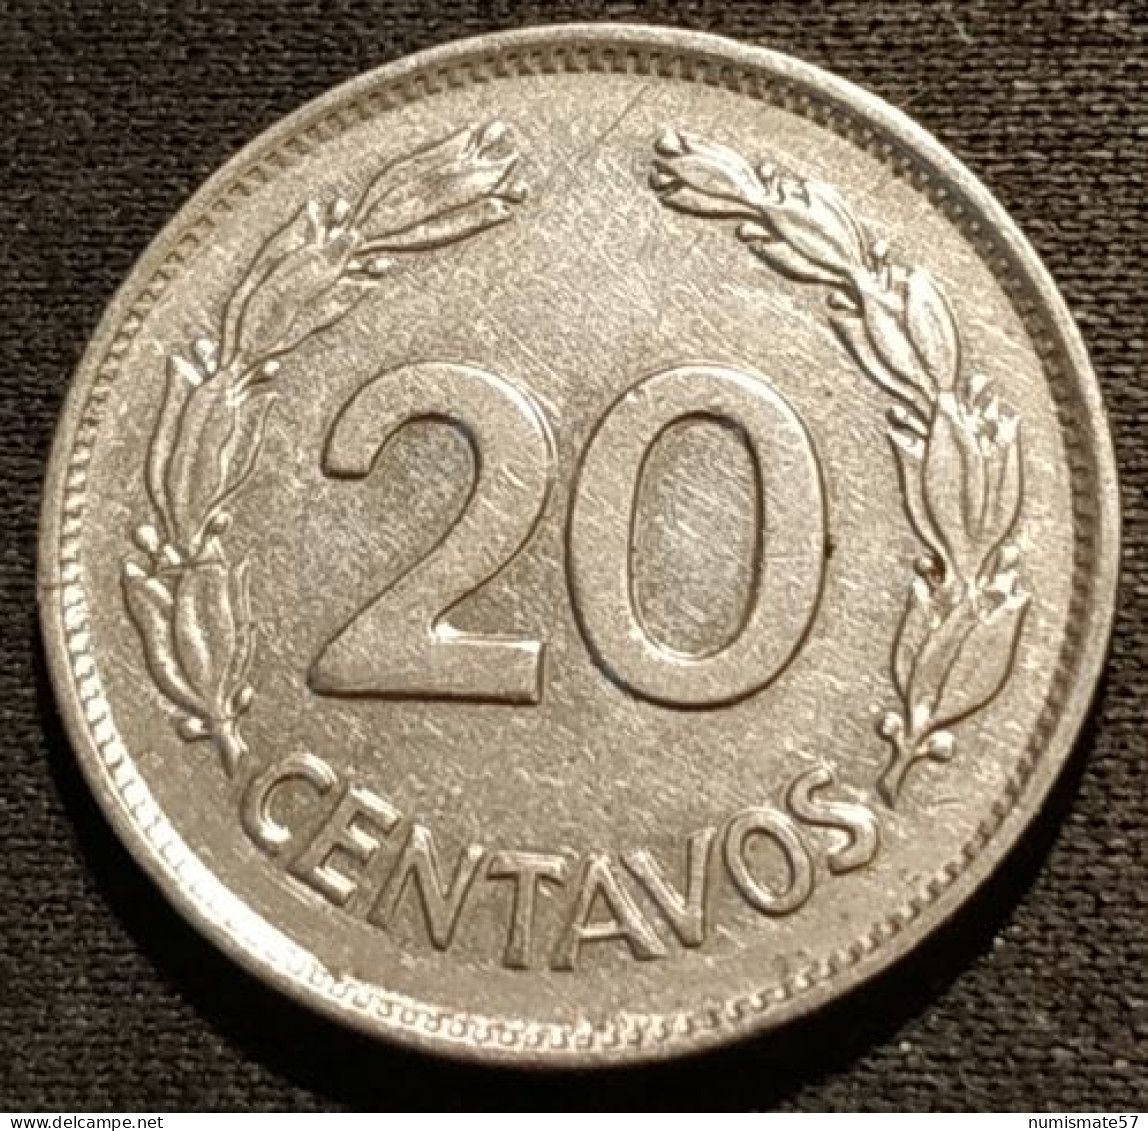 EQUATEUR - EQUATOR - 20 CENTAVOS 1966 - KM 77.1c - Ecuador - Equateur